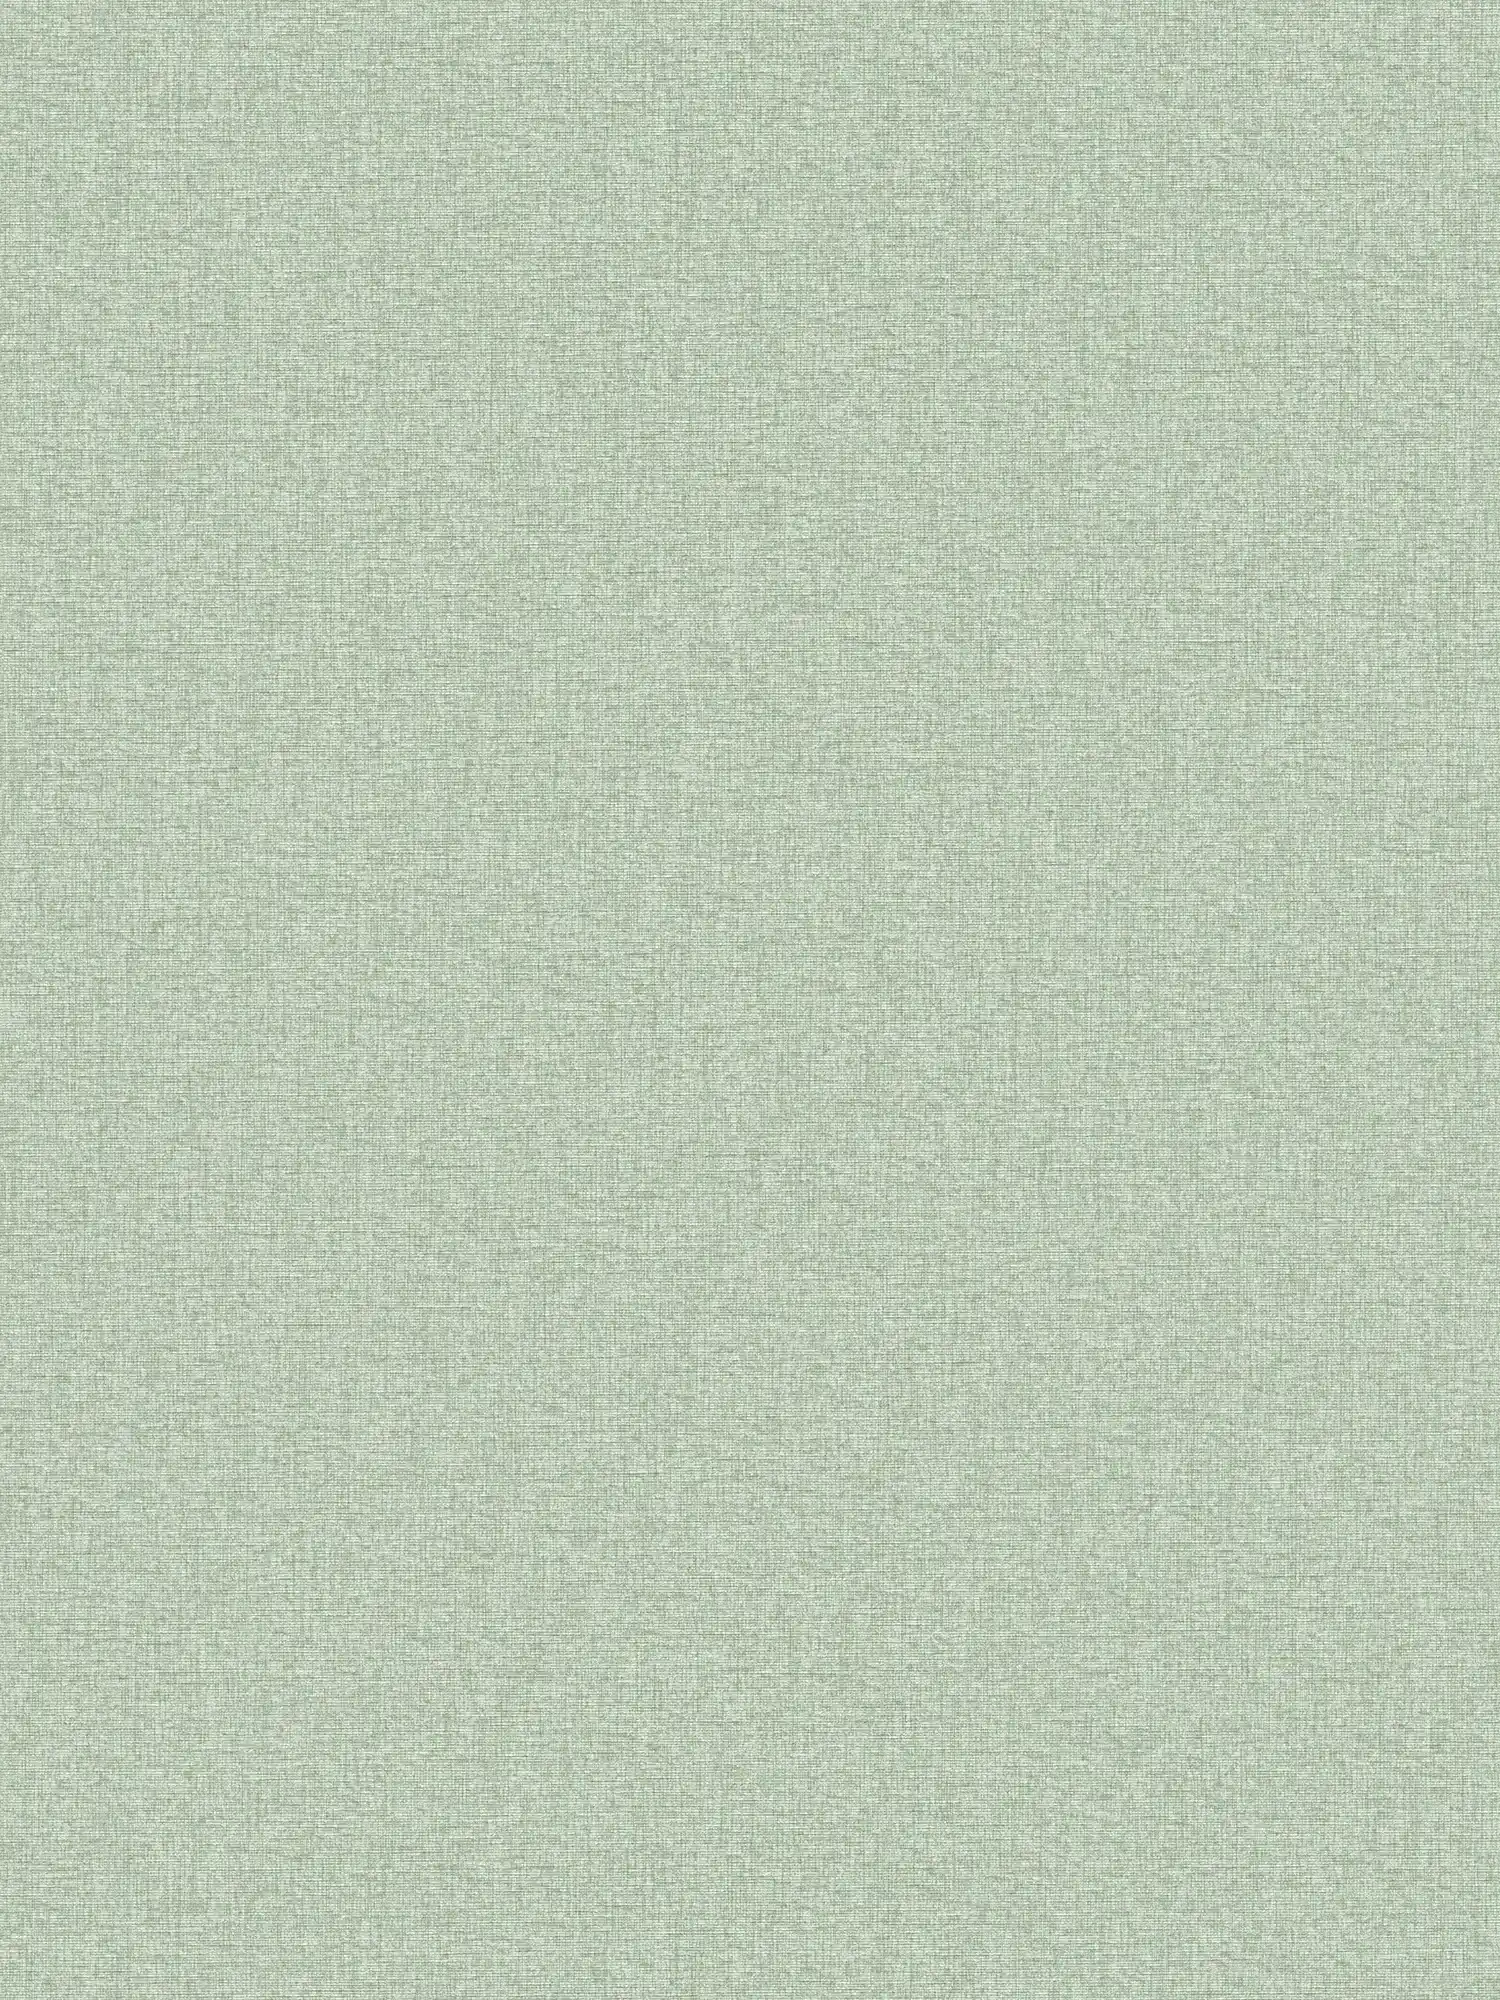 Effen behang in weefsellook met lichte structuur, mat - groen
